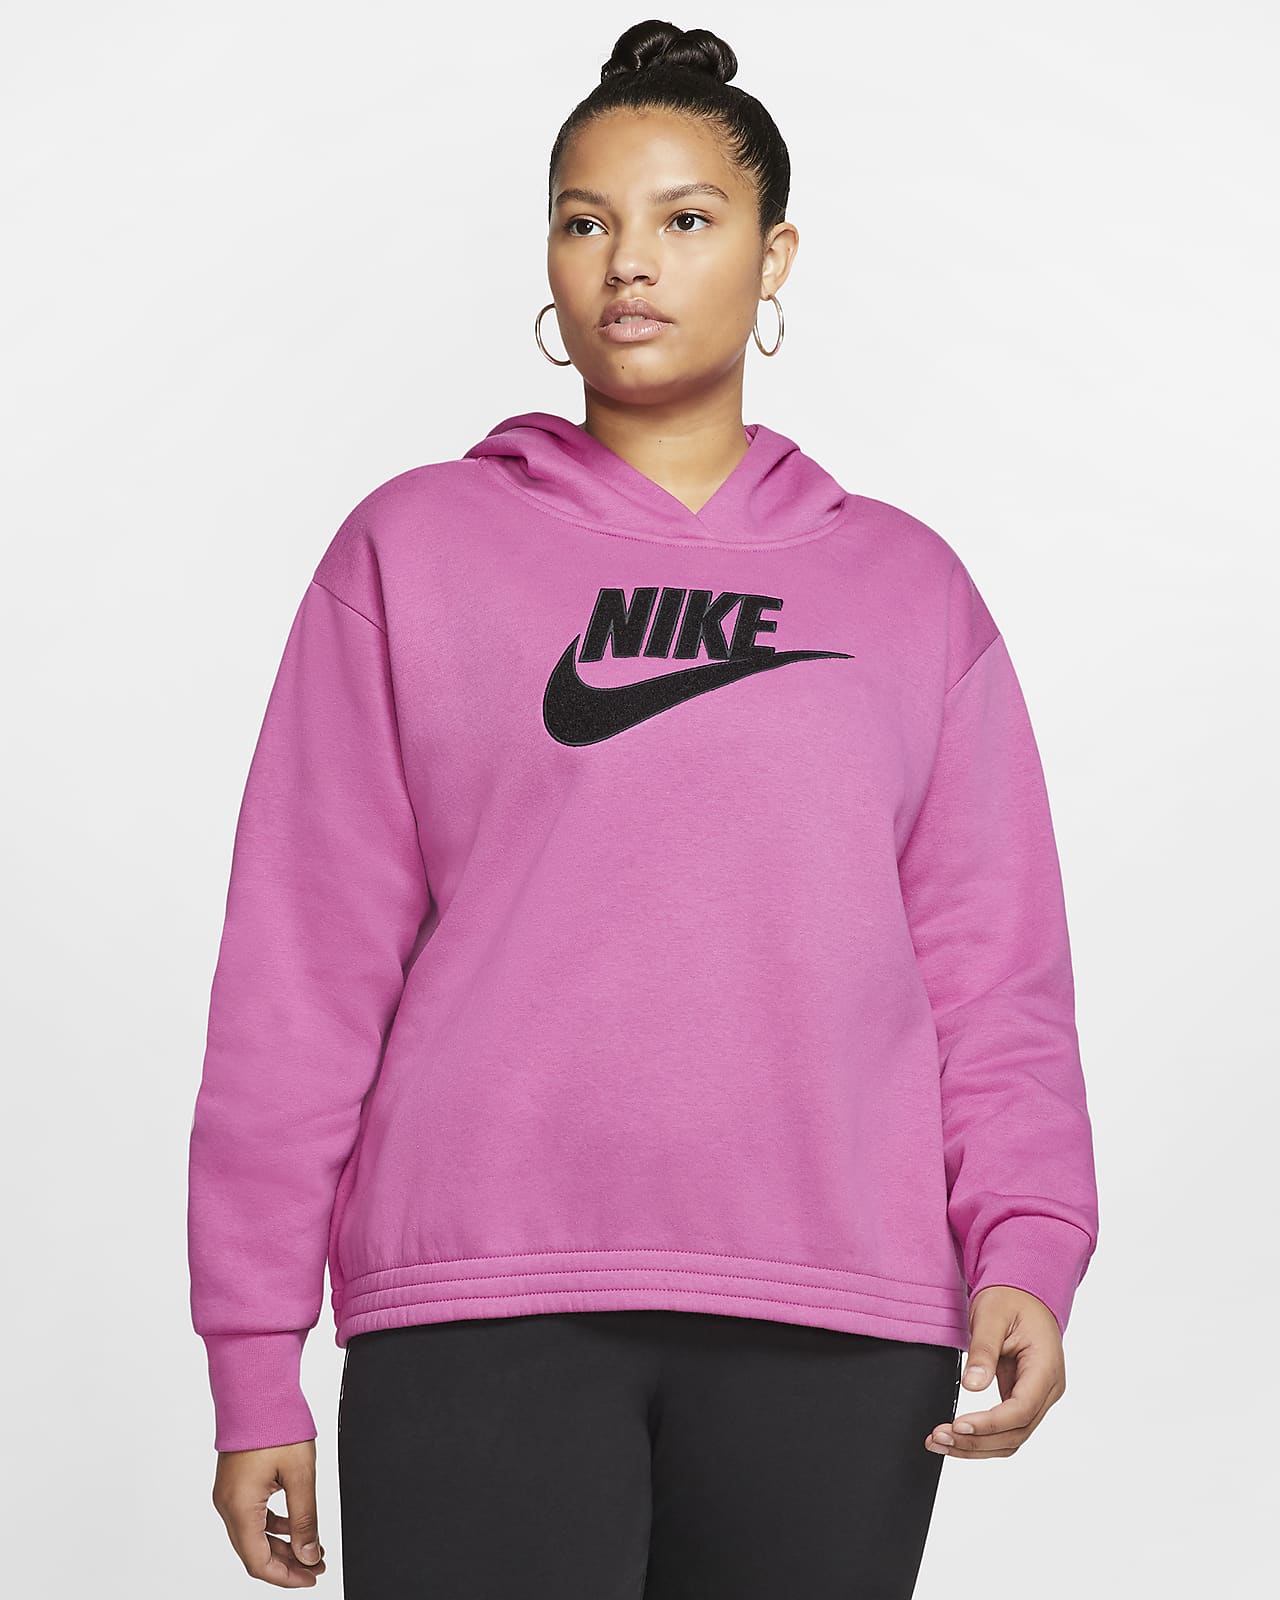 pink hoodie plus size